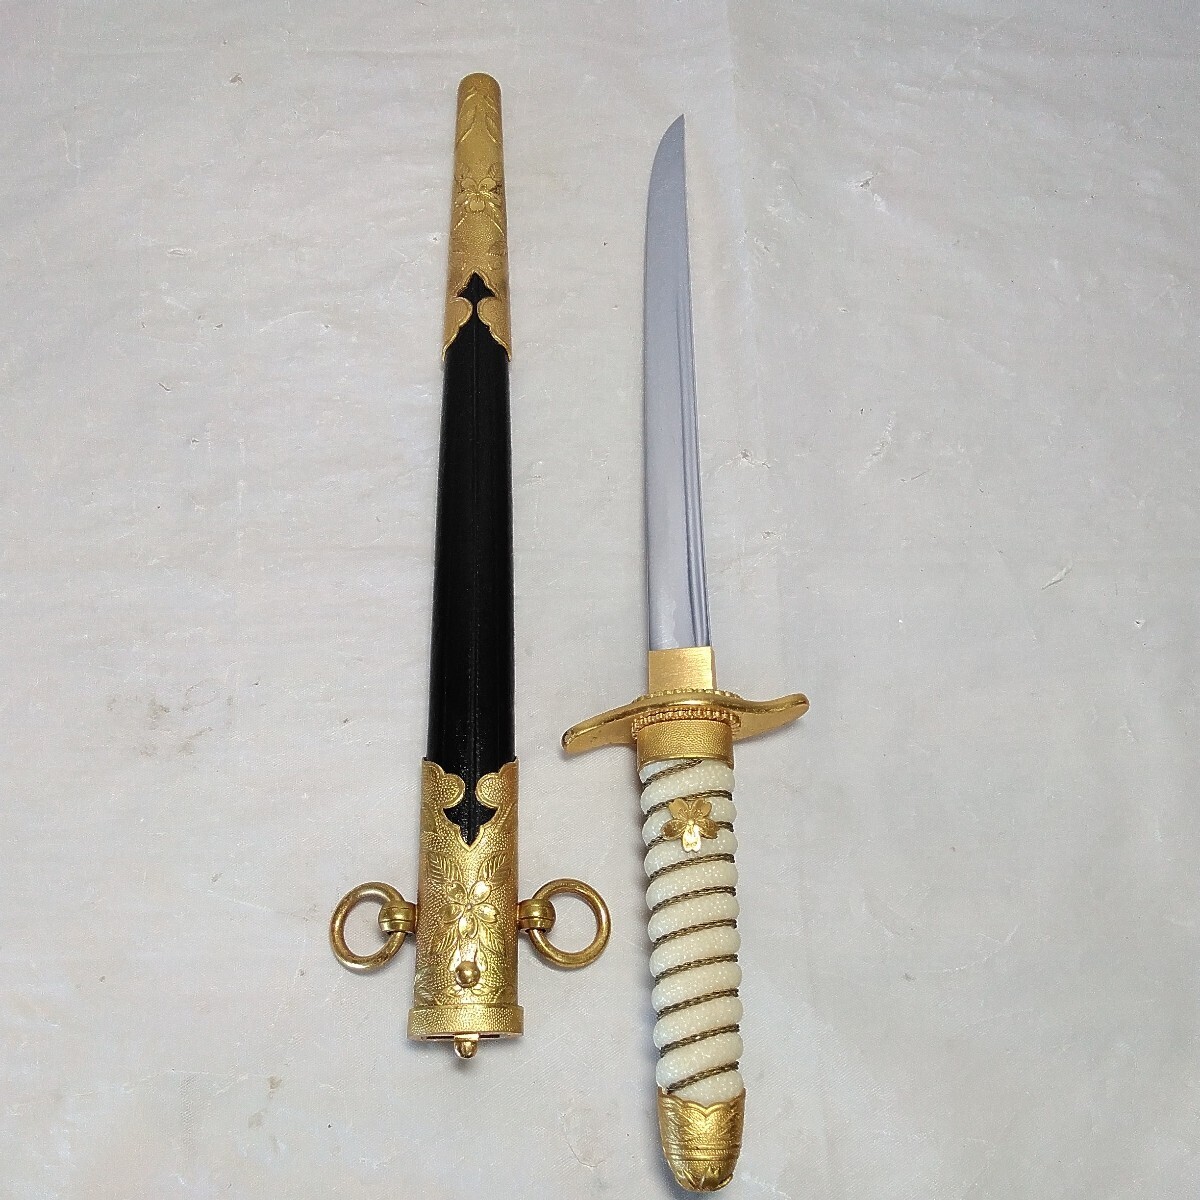  Япония военно-морской флот короткий . палец . меч оборудование орнамент иммитация меча Sakura узор копия иммитация меча 